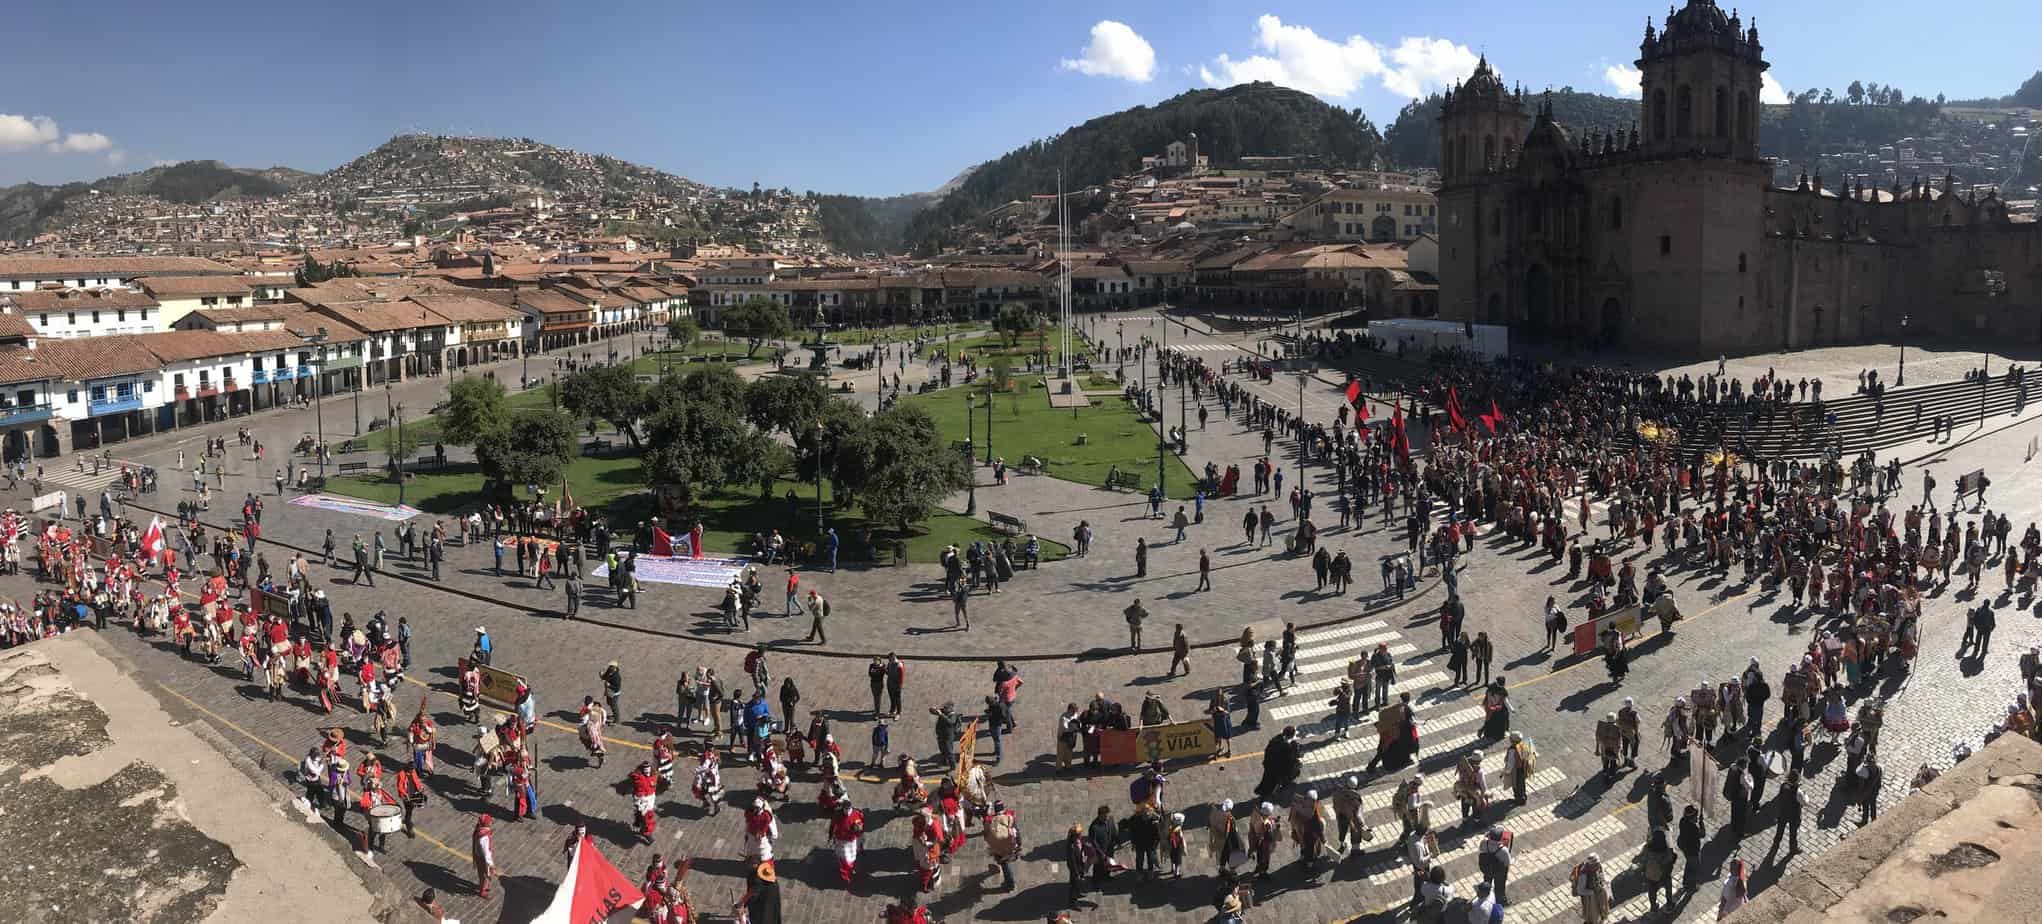  Plaza de Armas Cusco Peru 